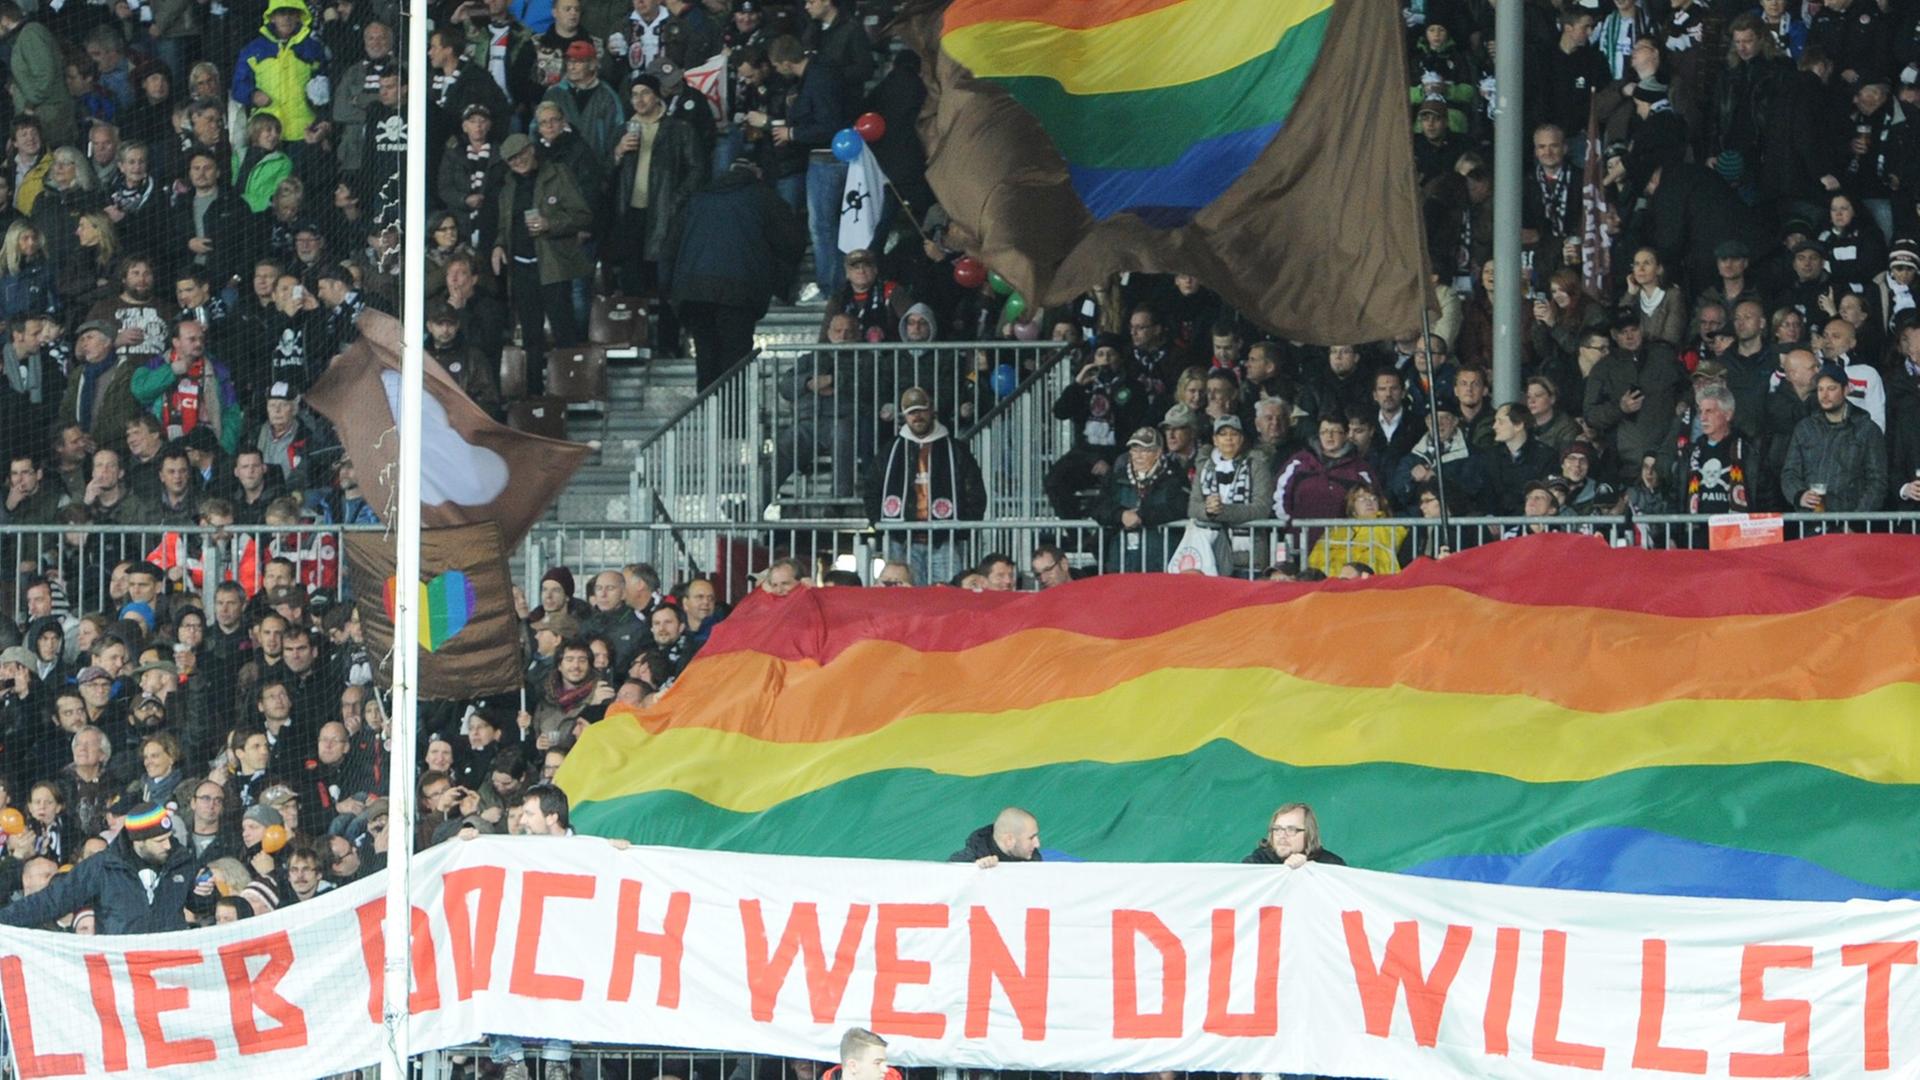 FC St. Pauli - SV Sandhausen am 25.10.2013 im Millerntorstadion in Hamburg. Die Paulifans setzten mit Transparenten ein Zeichen gegen Homophobie und Sexismus.